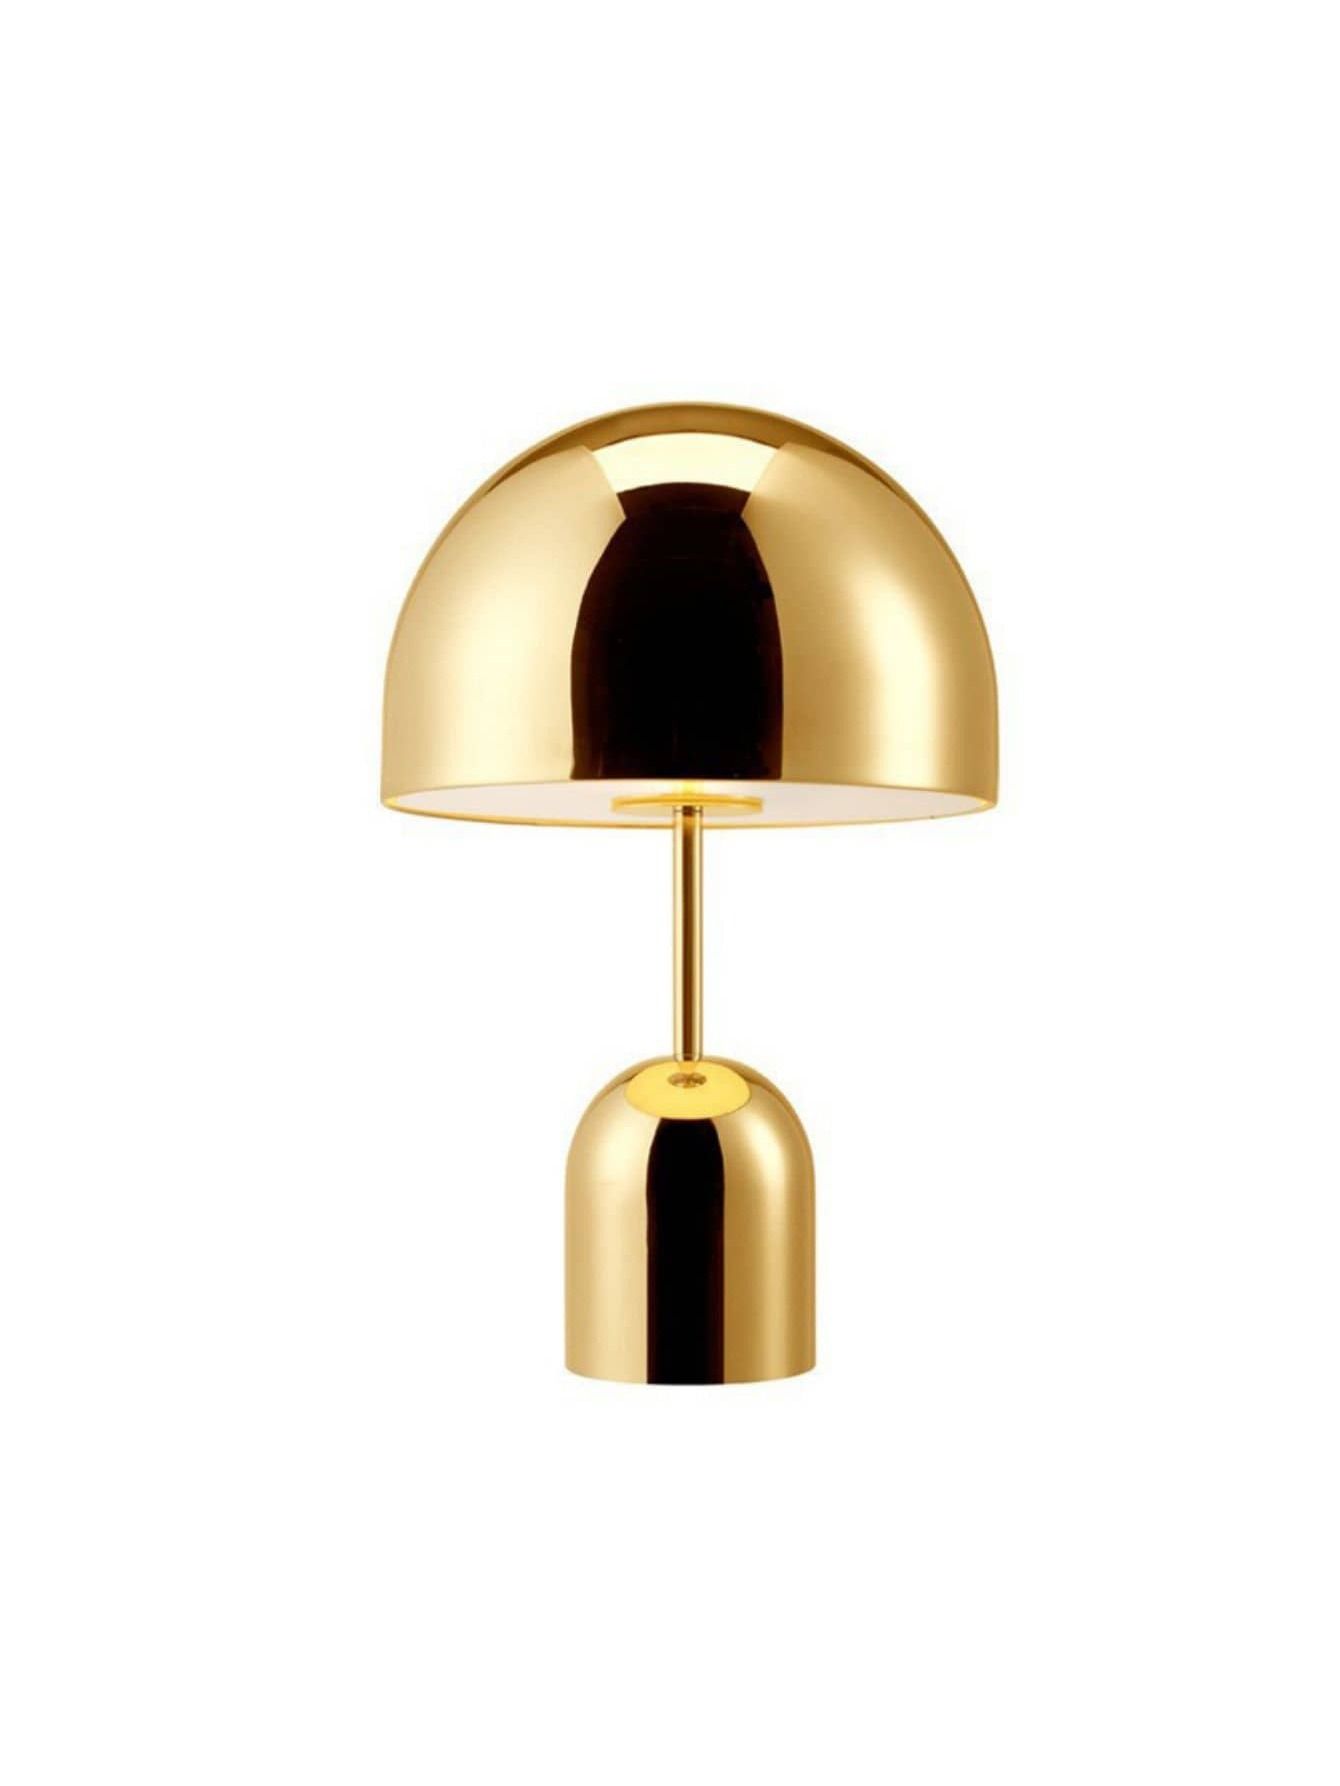 Tischlampe In Halbmondförmigem Design Mit Goldener Farbe | SHEIN